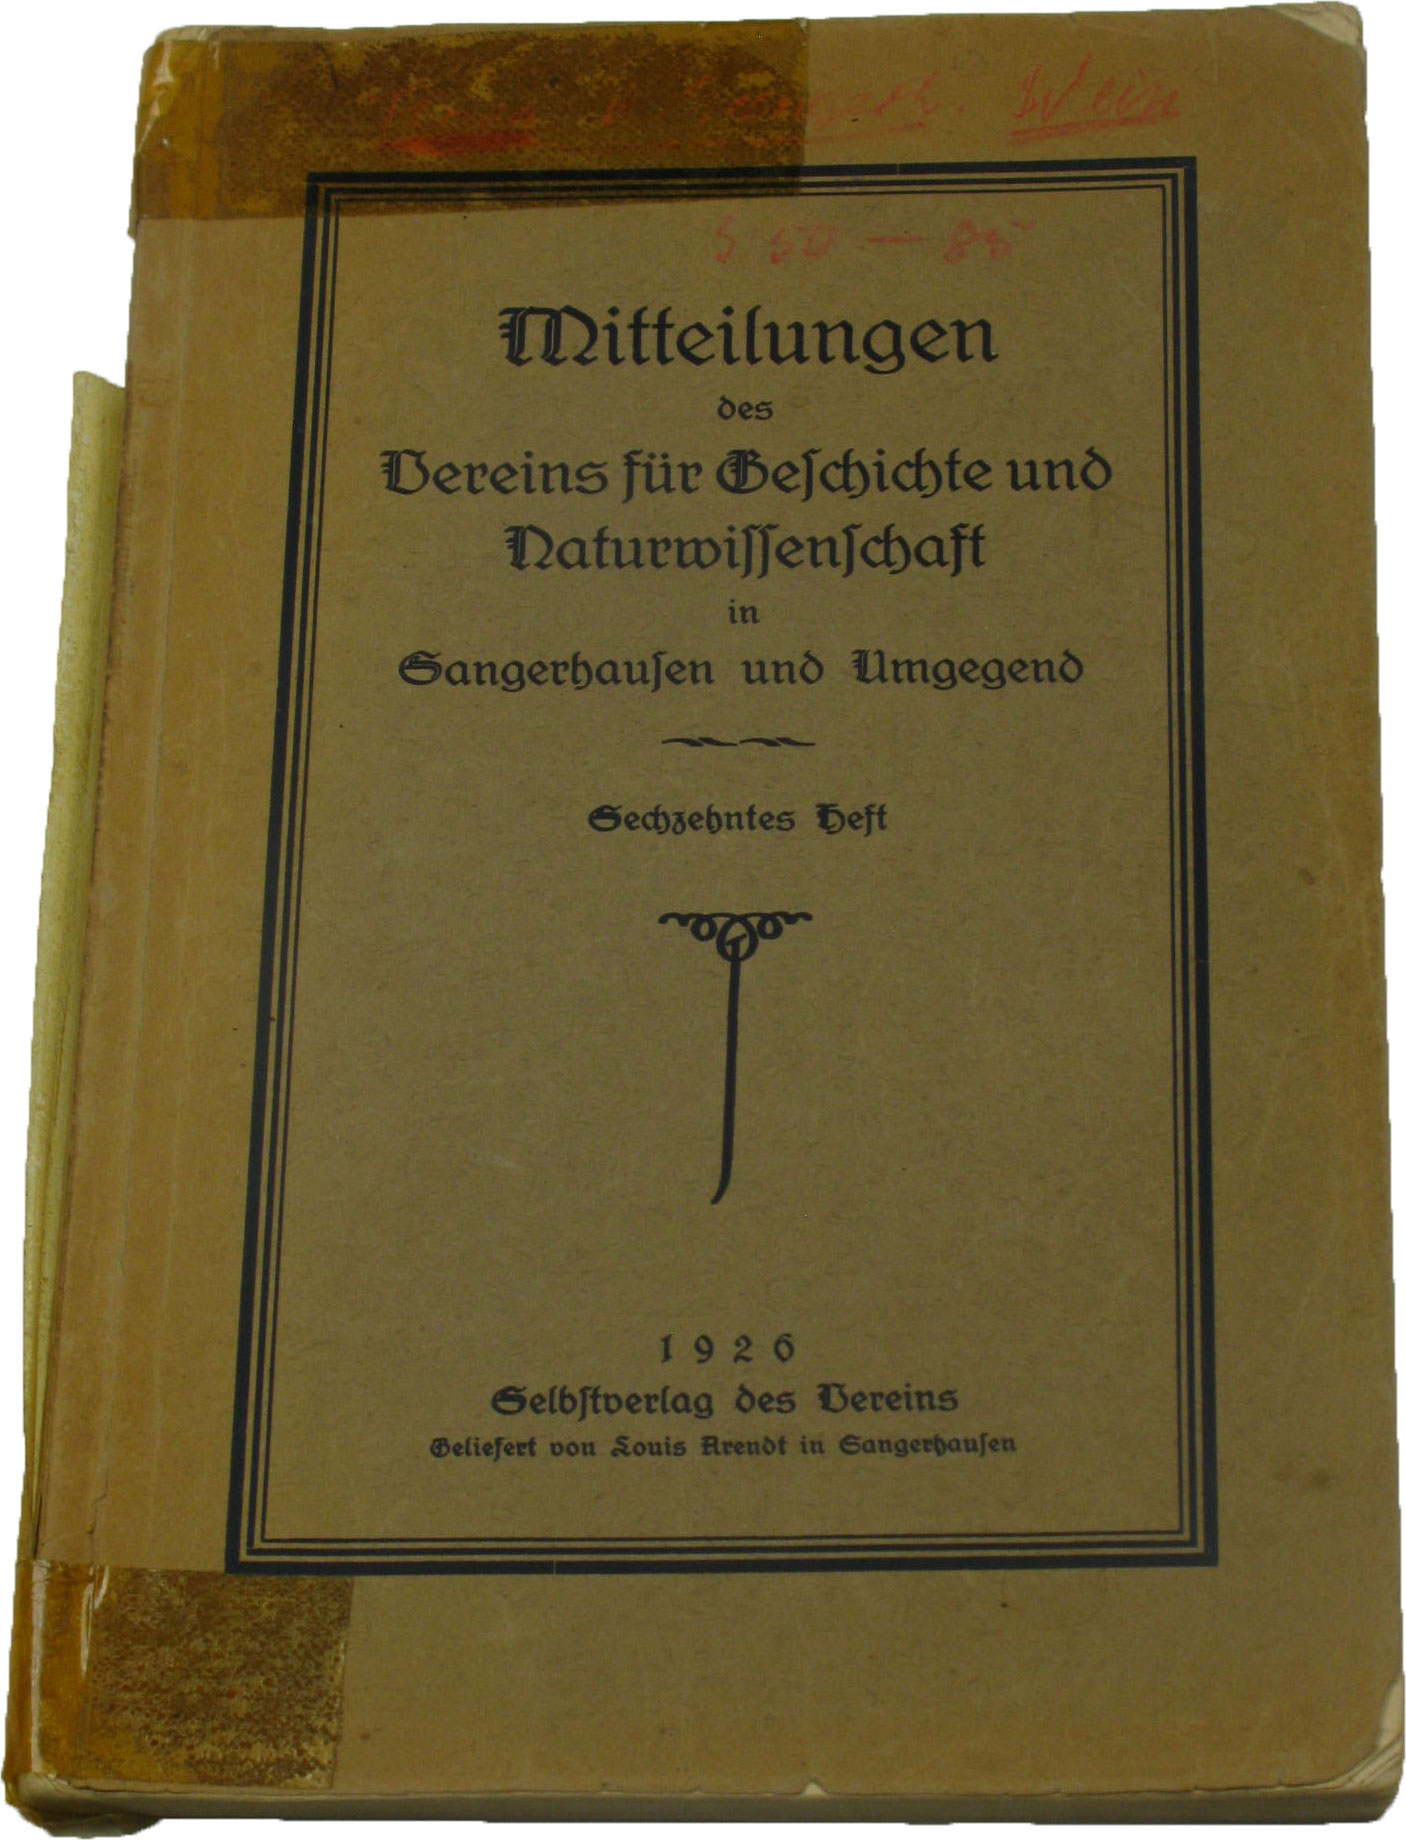 Autorenkollektiv:  Mitteilungen des Vereins für Geschichte und Naturwissenschaft in Sangerhausen und Umgegend (16. Heft) 